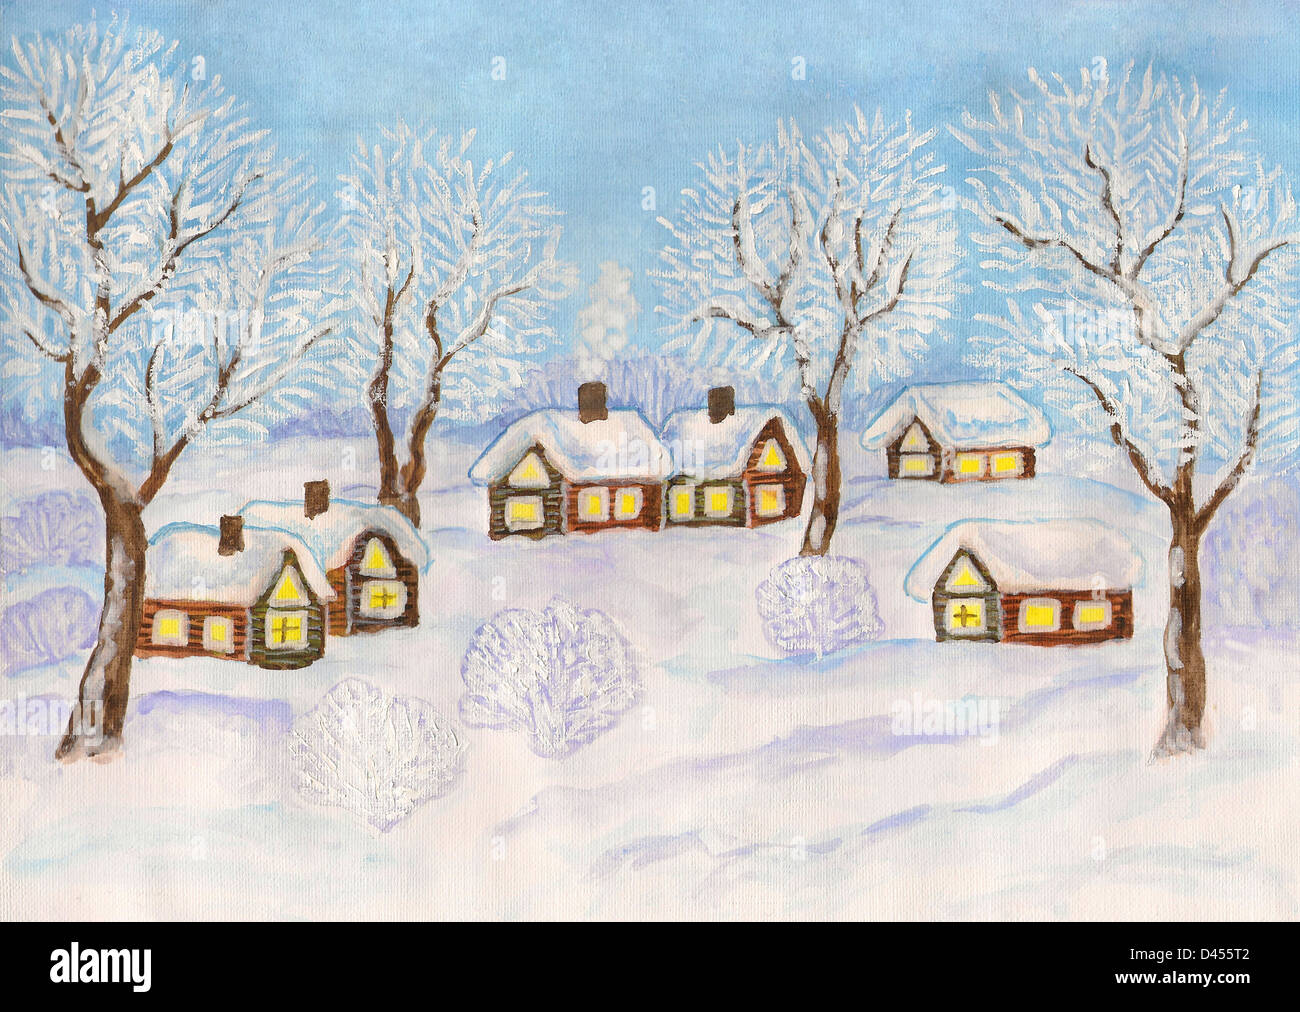 Dipinto A Mano Illustrazione Di Natale Acquarelli E Gouache Bianco Paesaggio Invernale Villaggio Con Case E Alberi Sul Cielo Blu Foto Stock Alamy